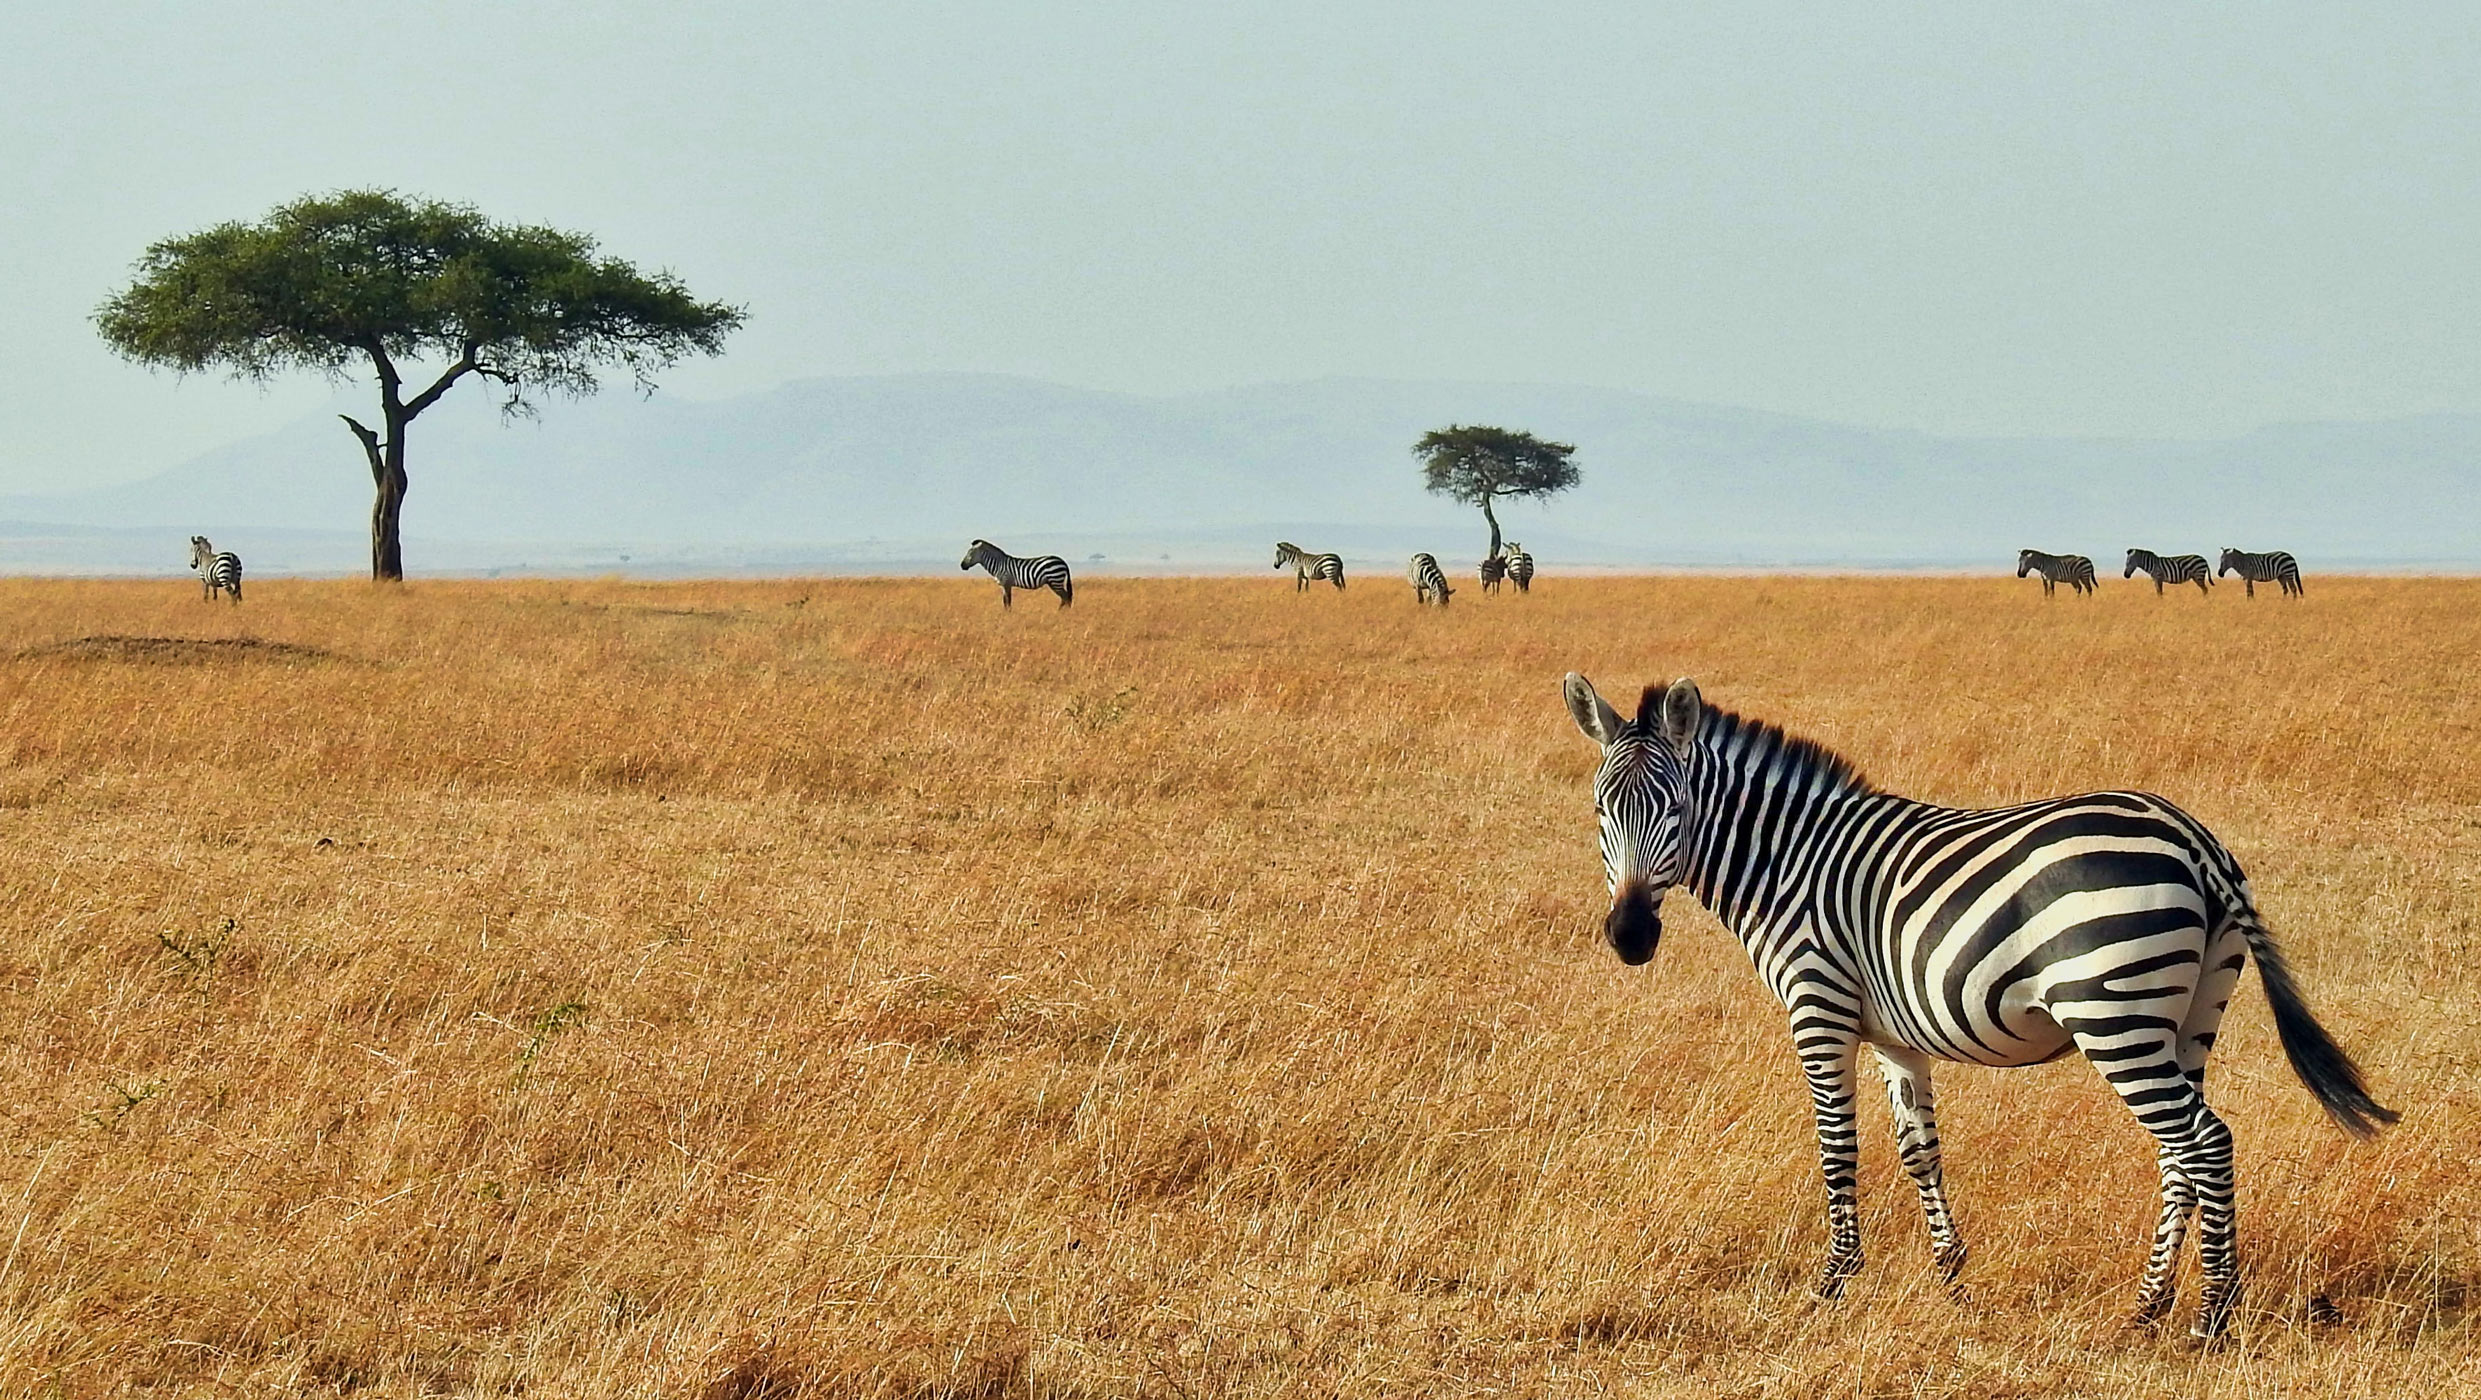 Zebra in the grasslands in Kenya Africa